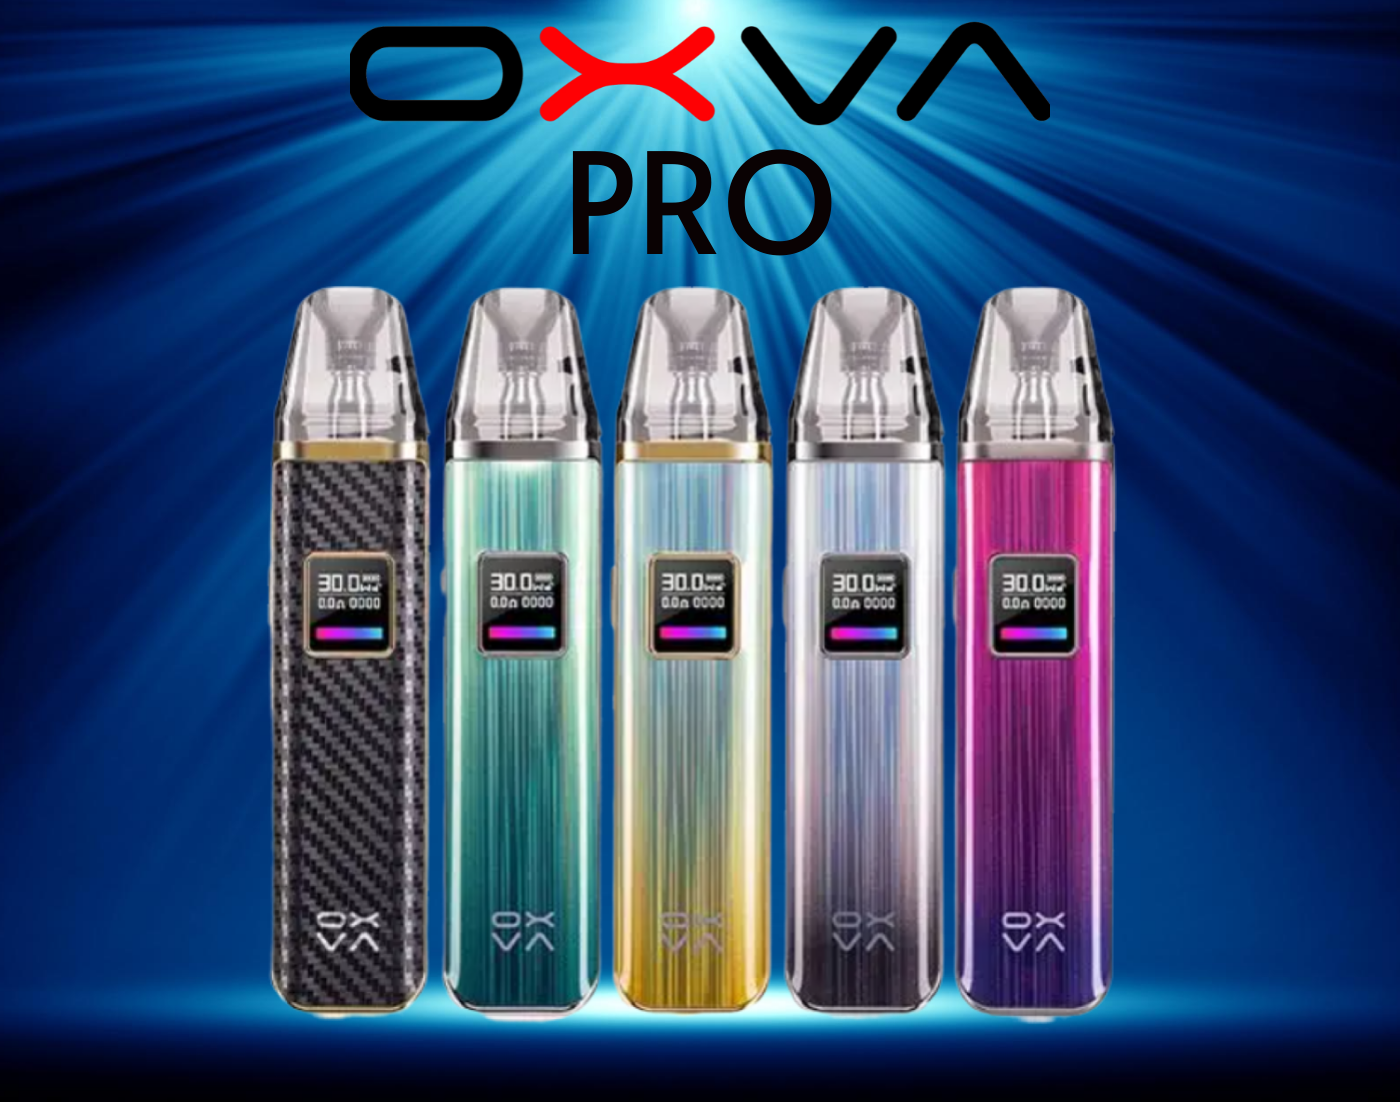 Oxva Pro